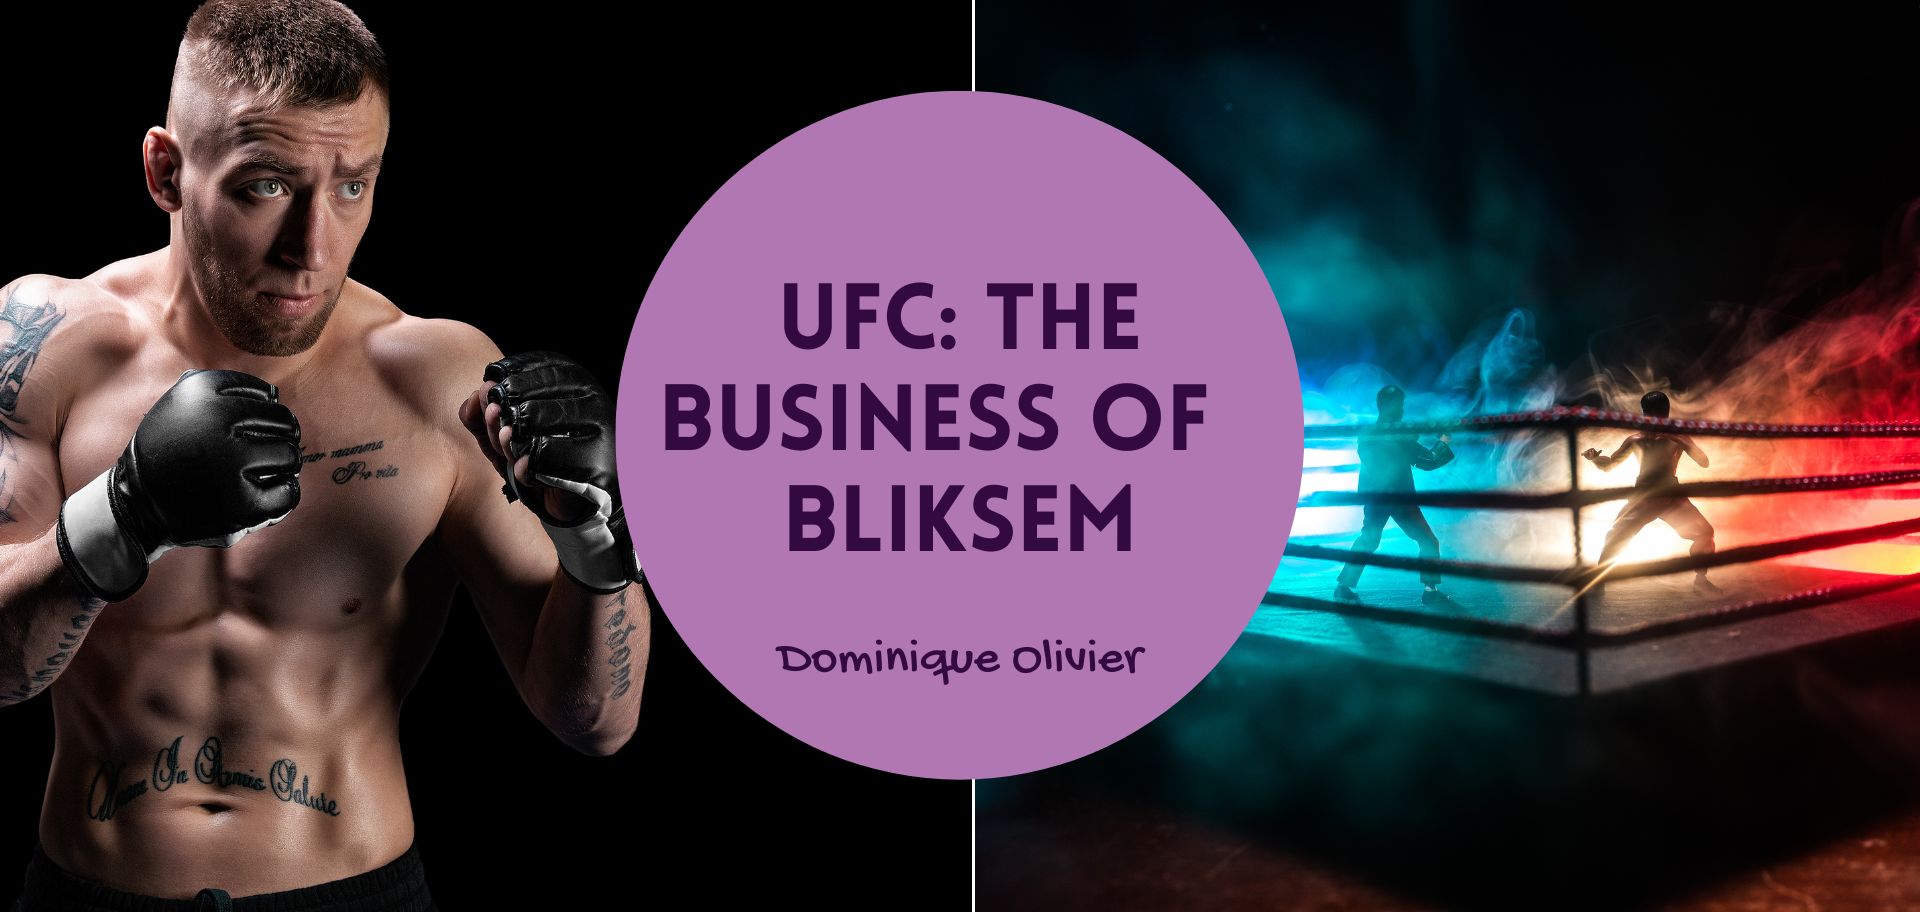 UFC: The business of bliksem